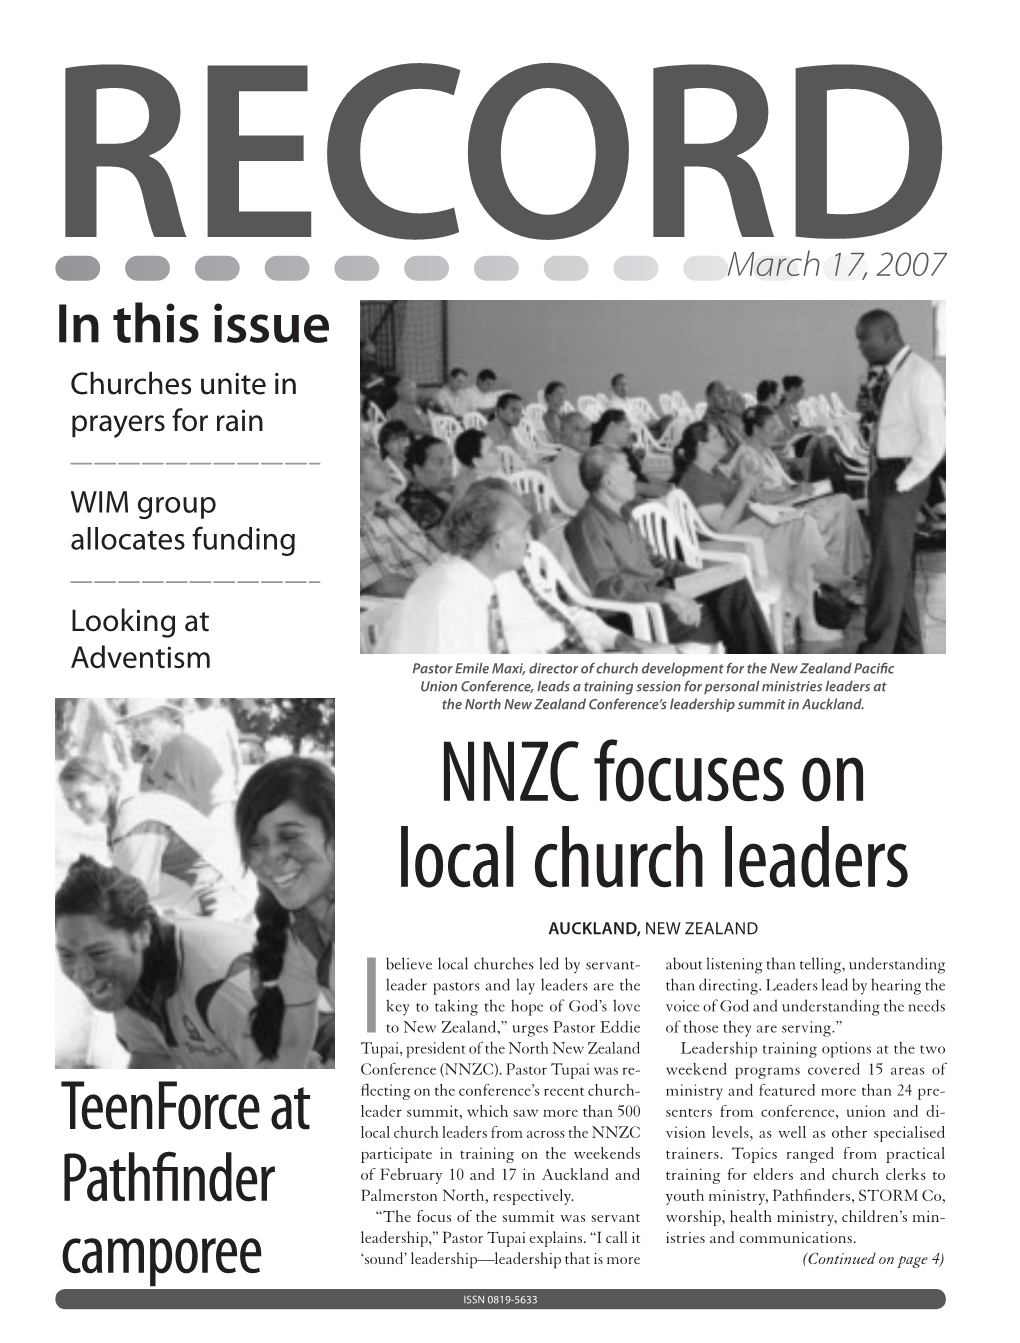 NNZC Focuses on Local Church Leaders AUCKLAND, NEW ZEALAND